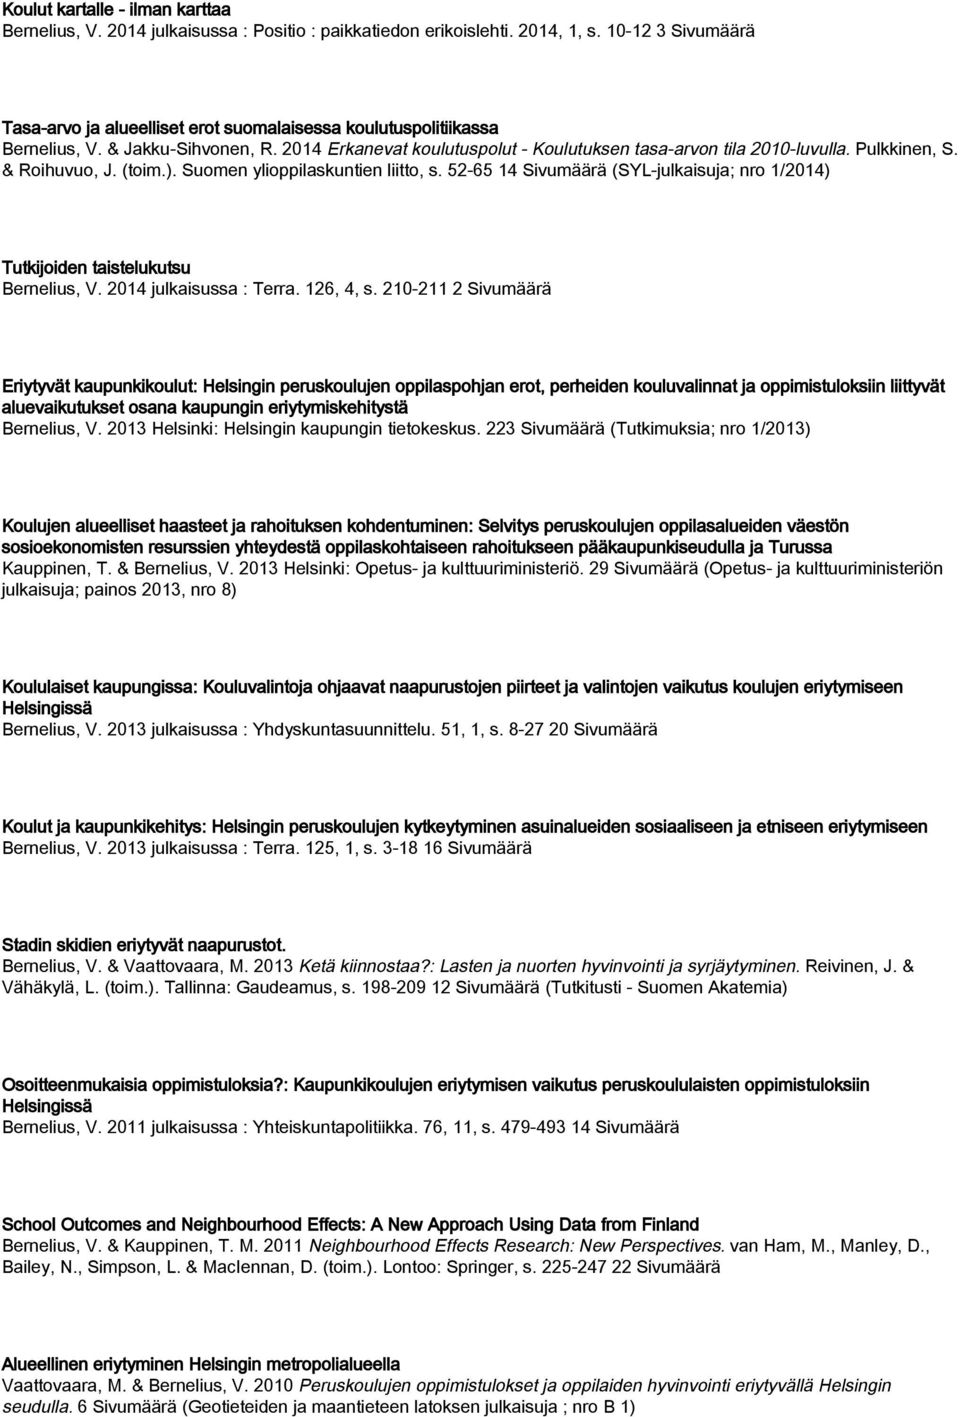 Pulkkinen, S. & Roihuvuo, J. (toim.). Suomen ylioppilaskuntien liitto, s. 52-65 14 Sivumäärä (SYL-julkaisuja; nro 1/2014) Tutkijoiden taistelukutsu Bernelius, V. 2014 julkaisussa : Terra. 126, 4, s.